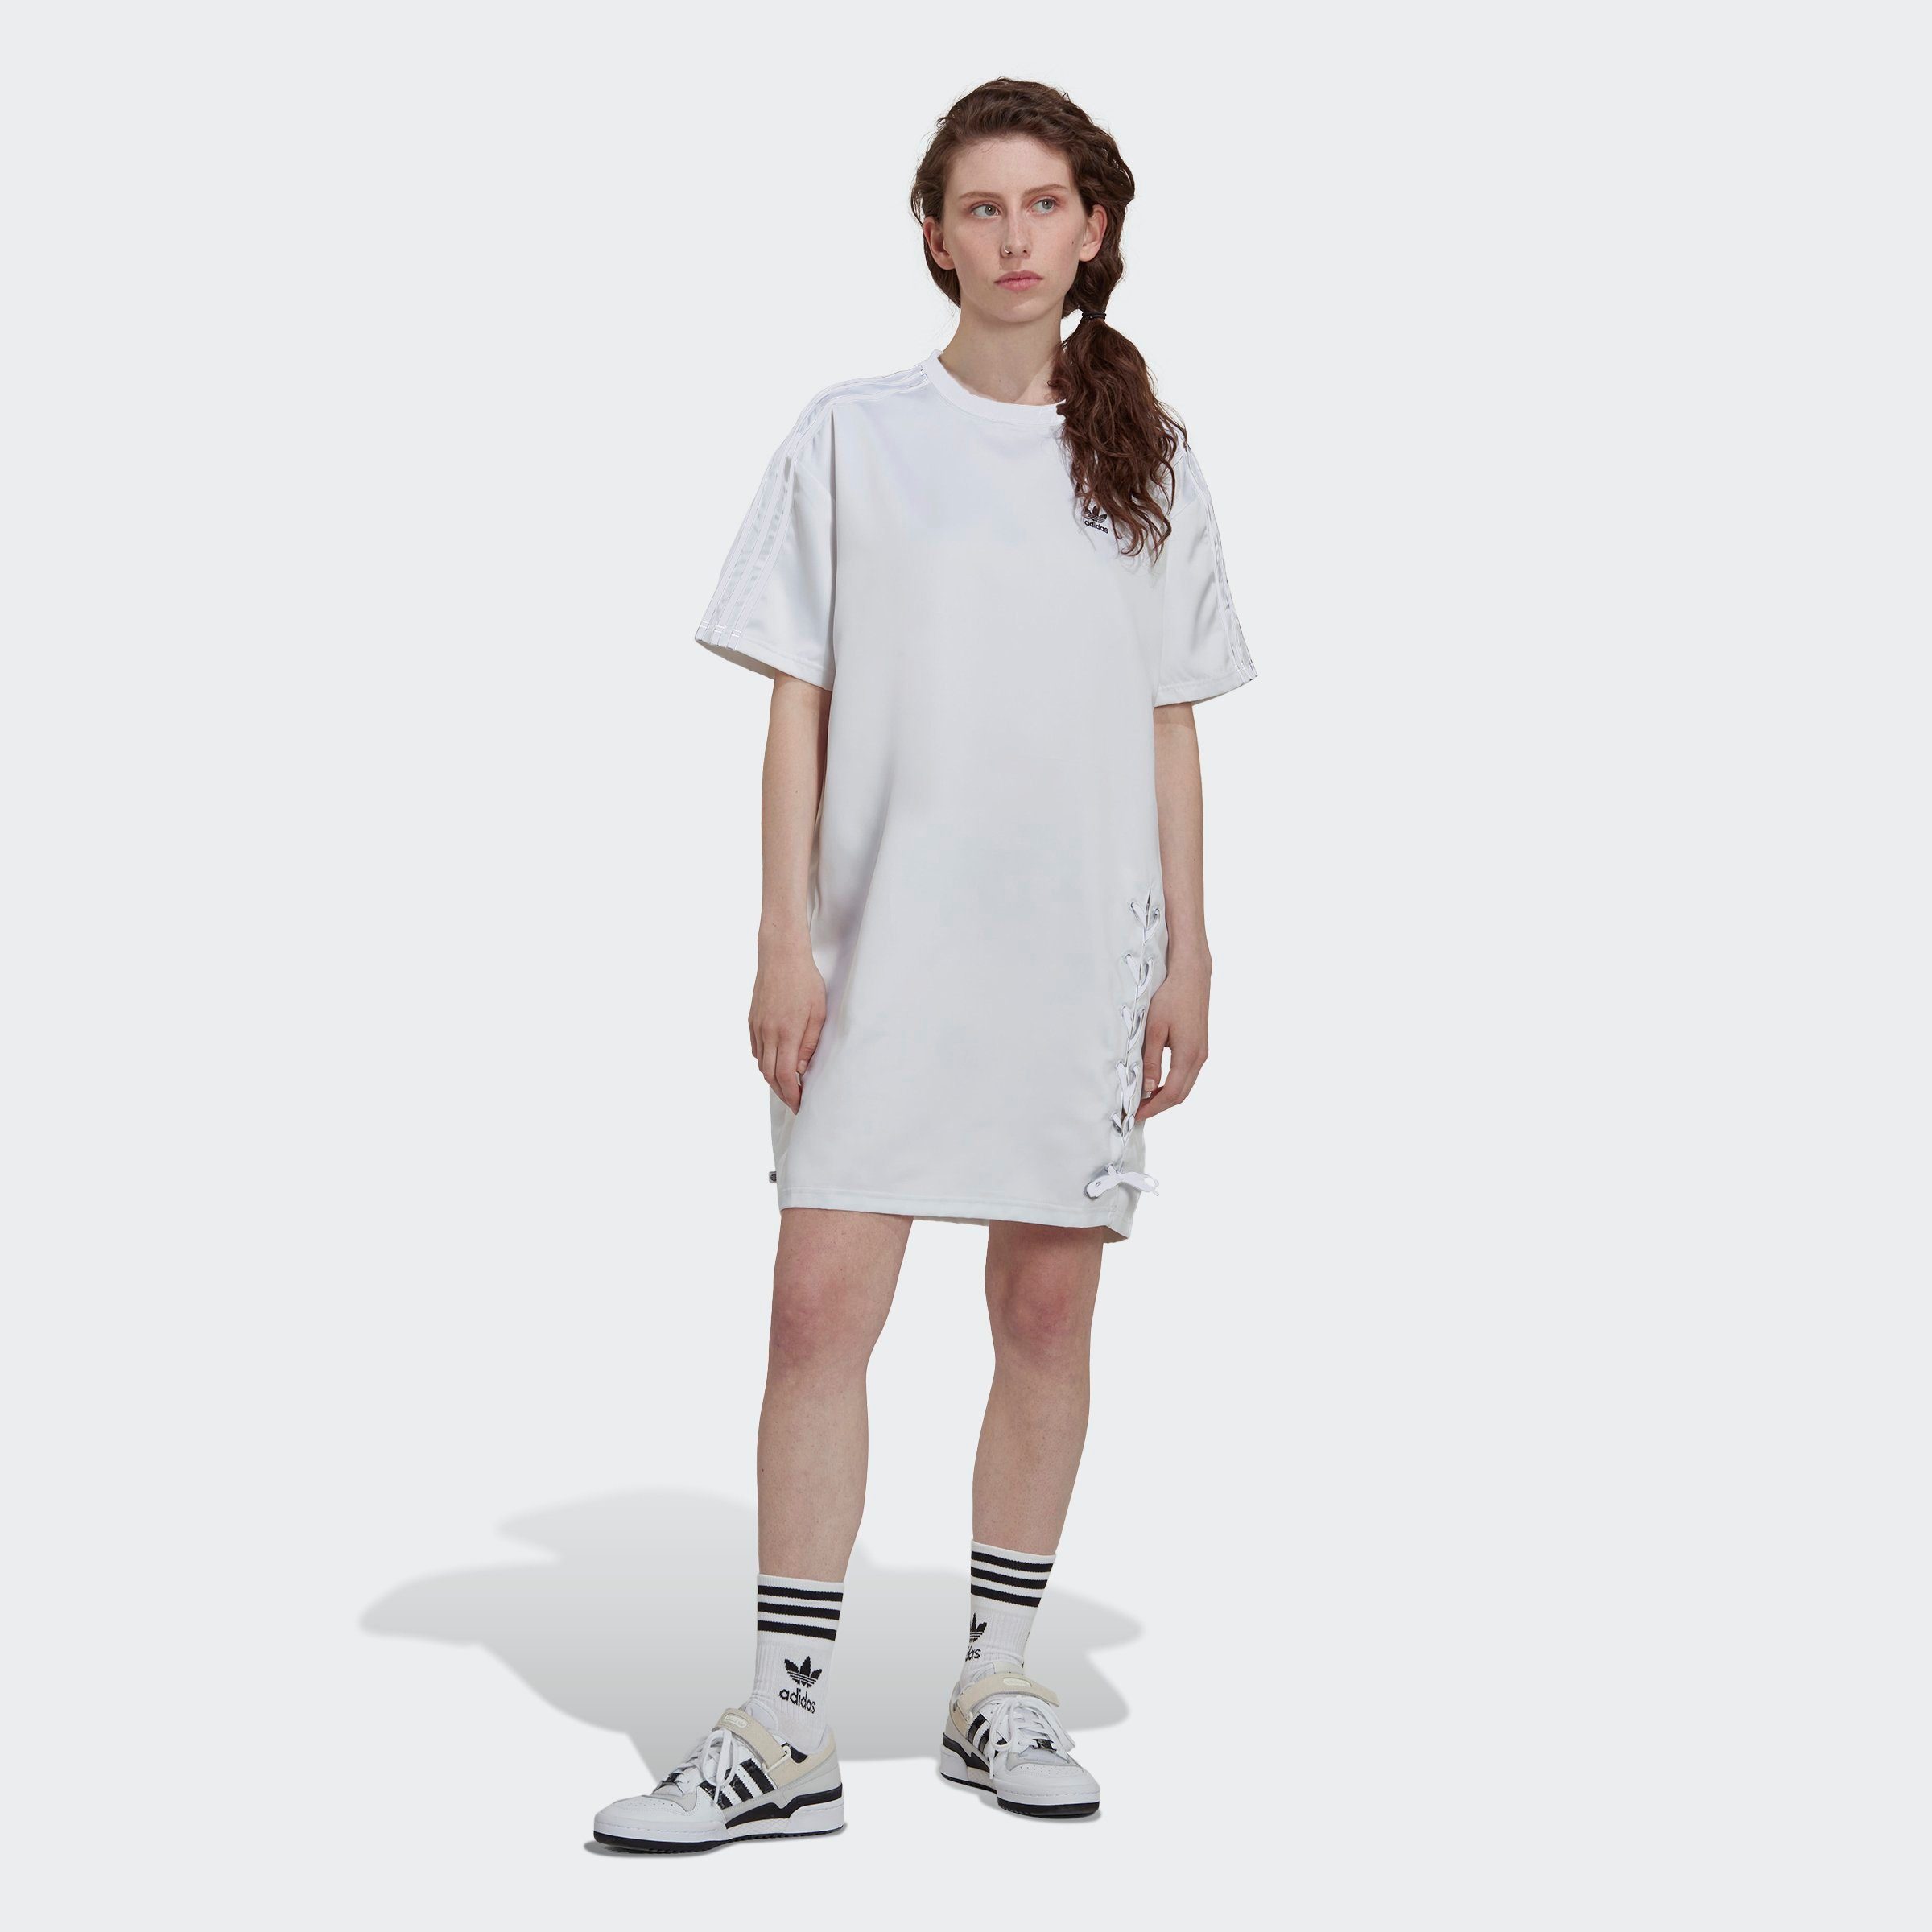 ALWAYS -KLEID ORIGINAL Originals LACED Sommerkleid WHITE adidas